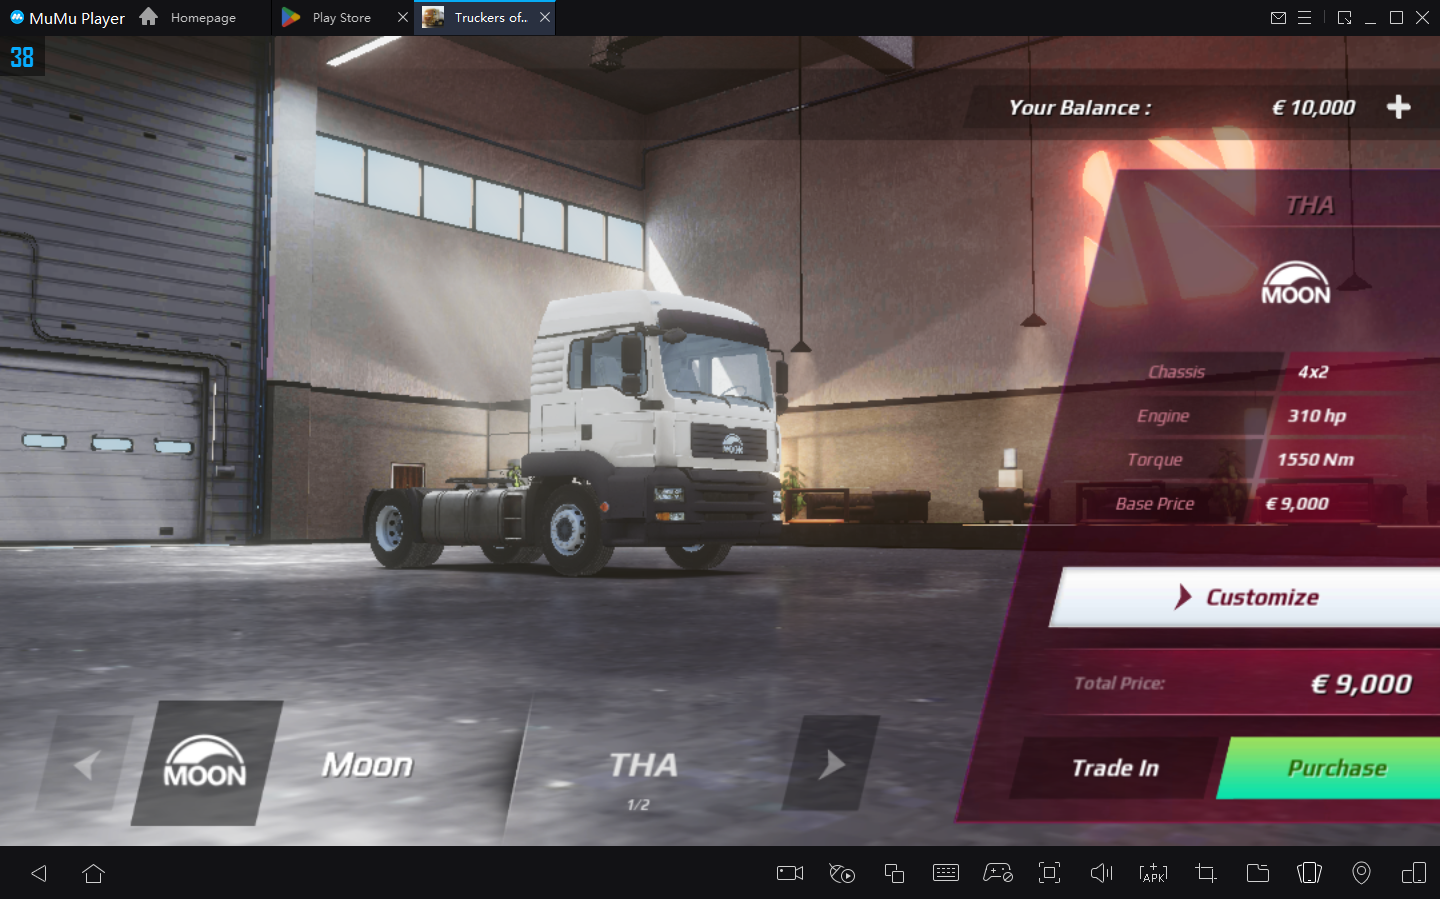 Como jogar Truckers of Europe 3 no PC com Emulador Android